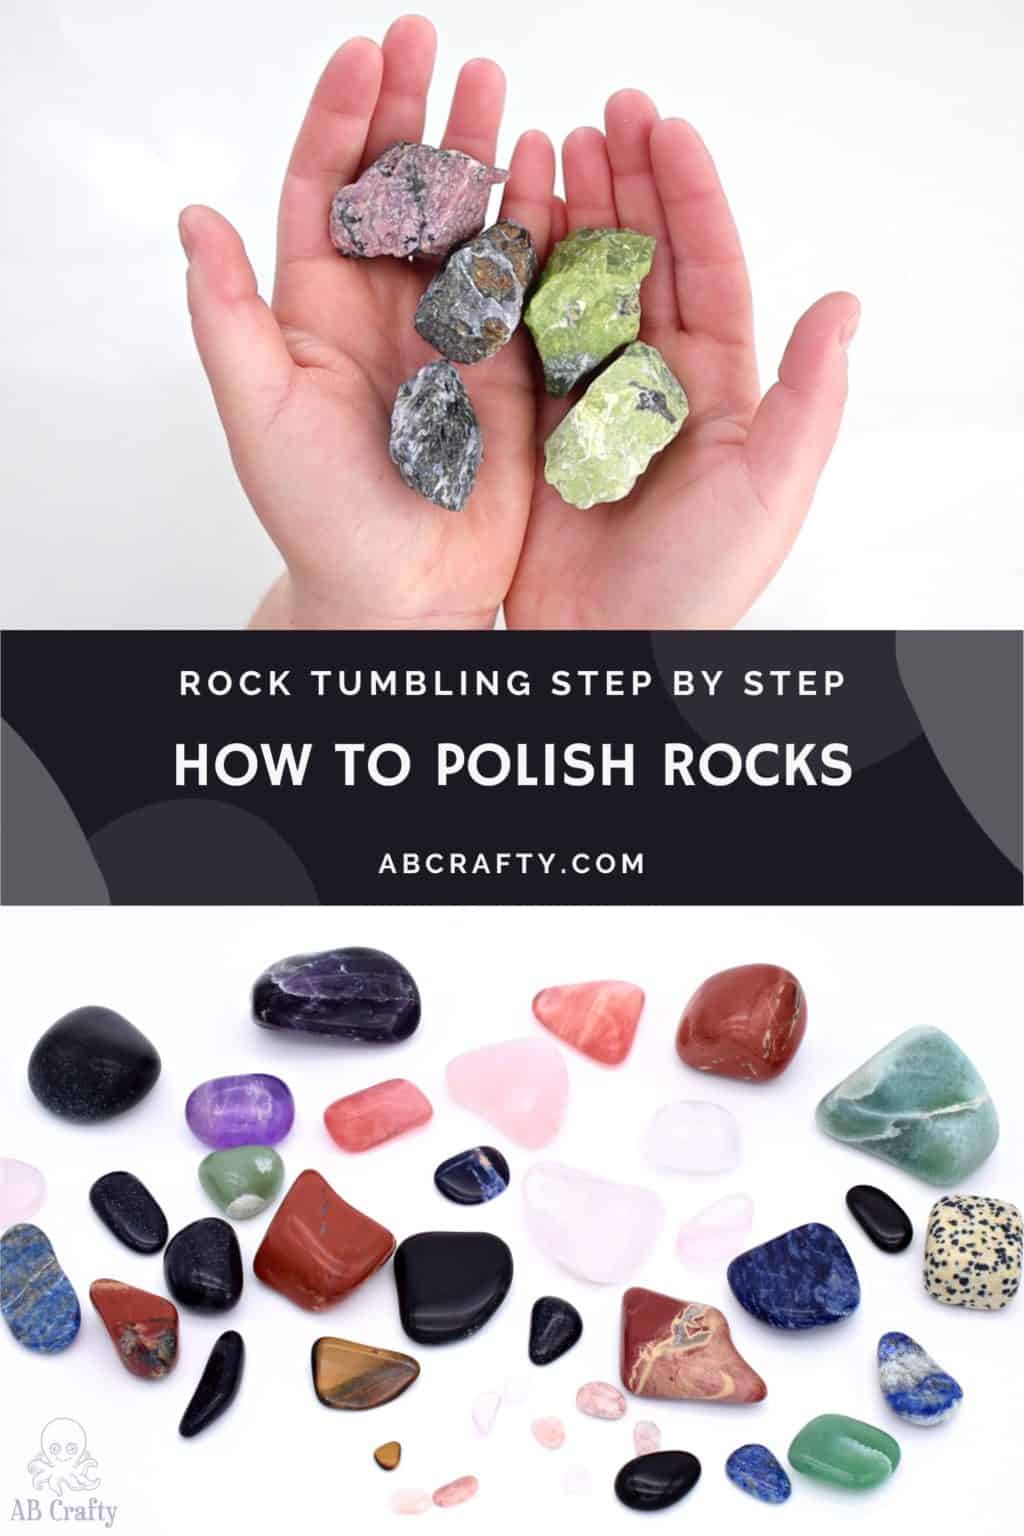 Rock Tumbling and Polishing Group